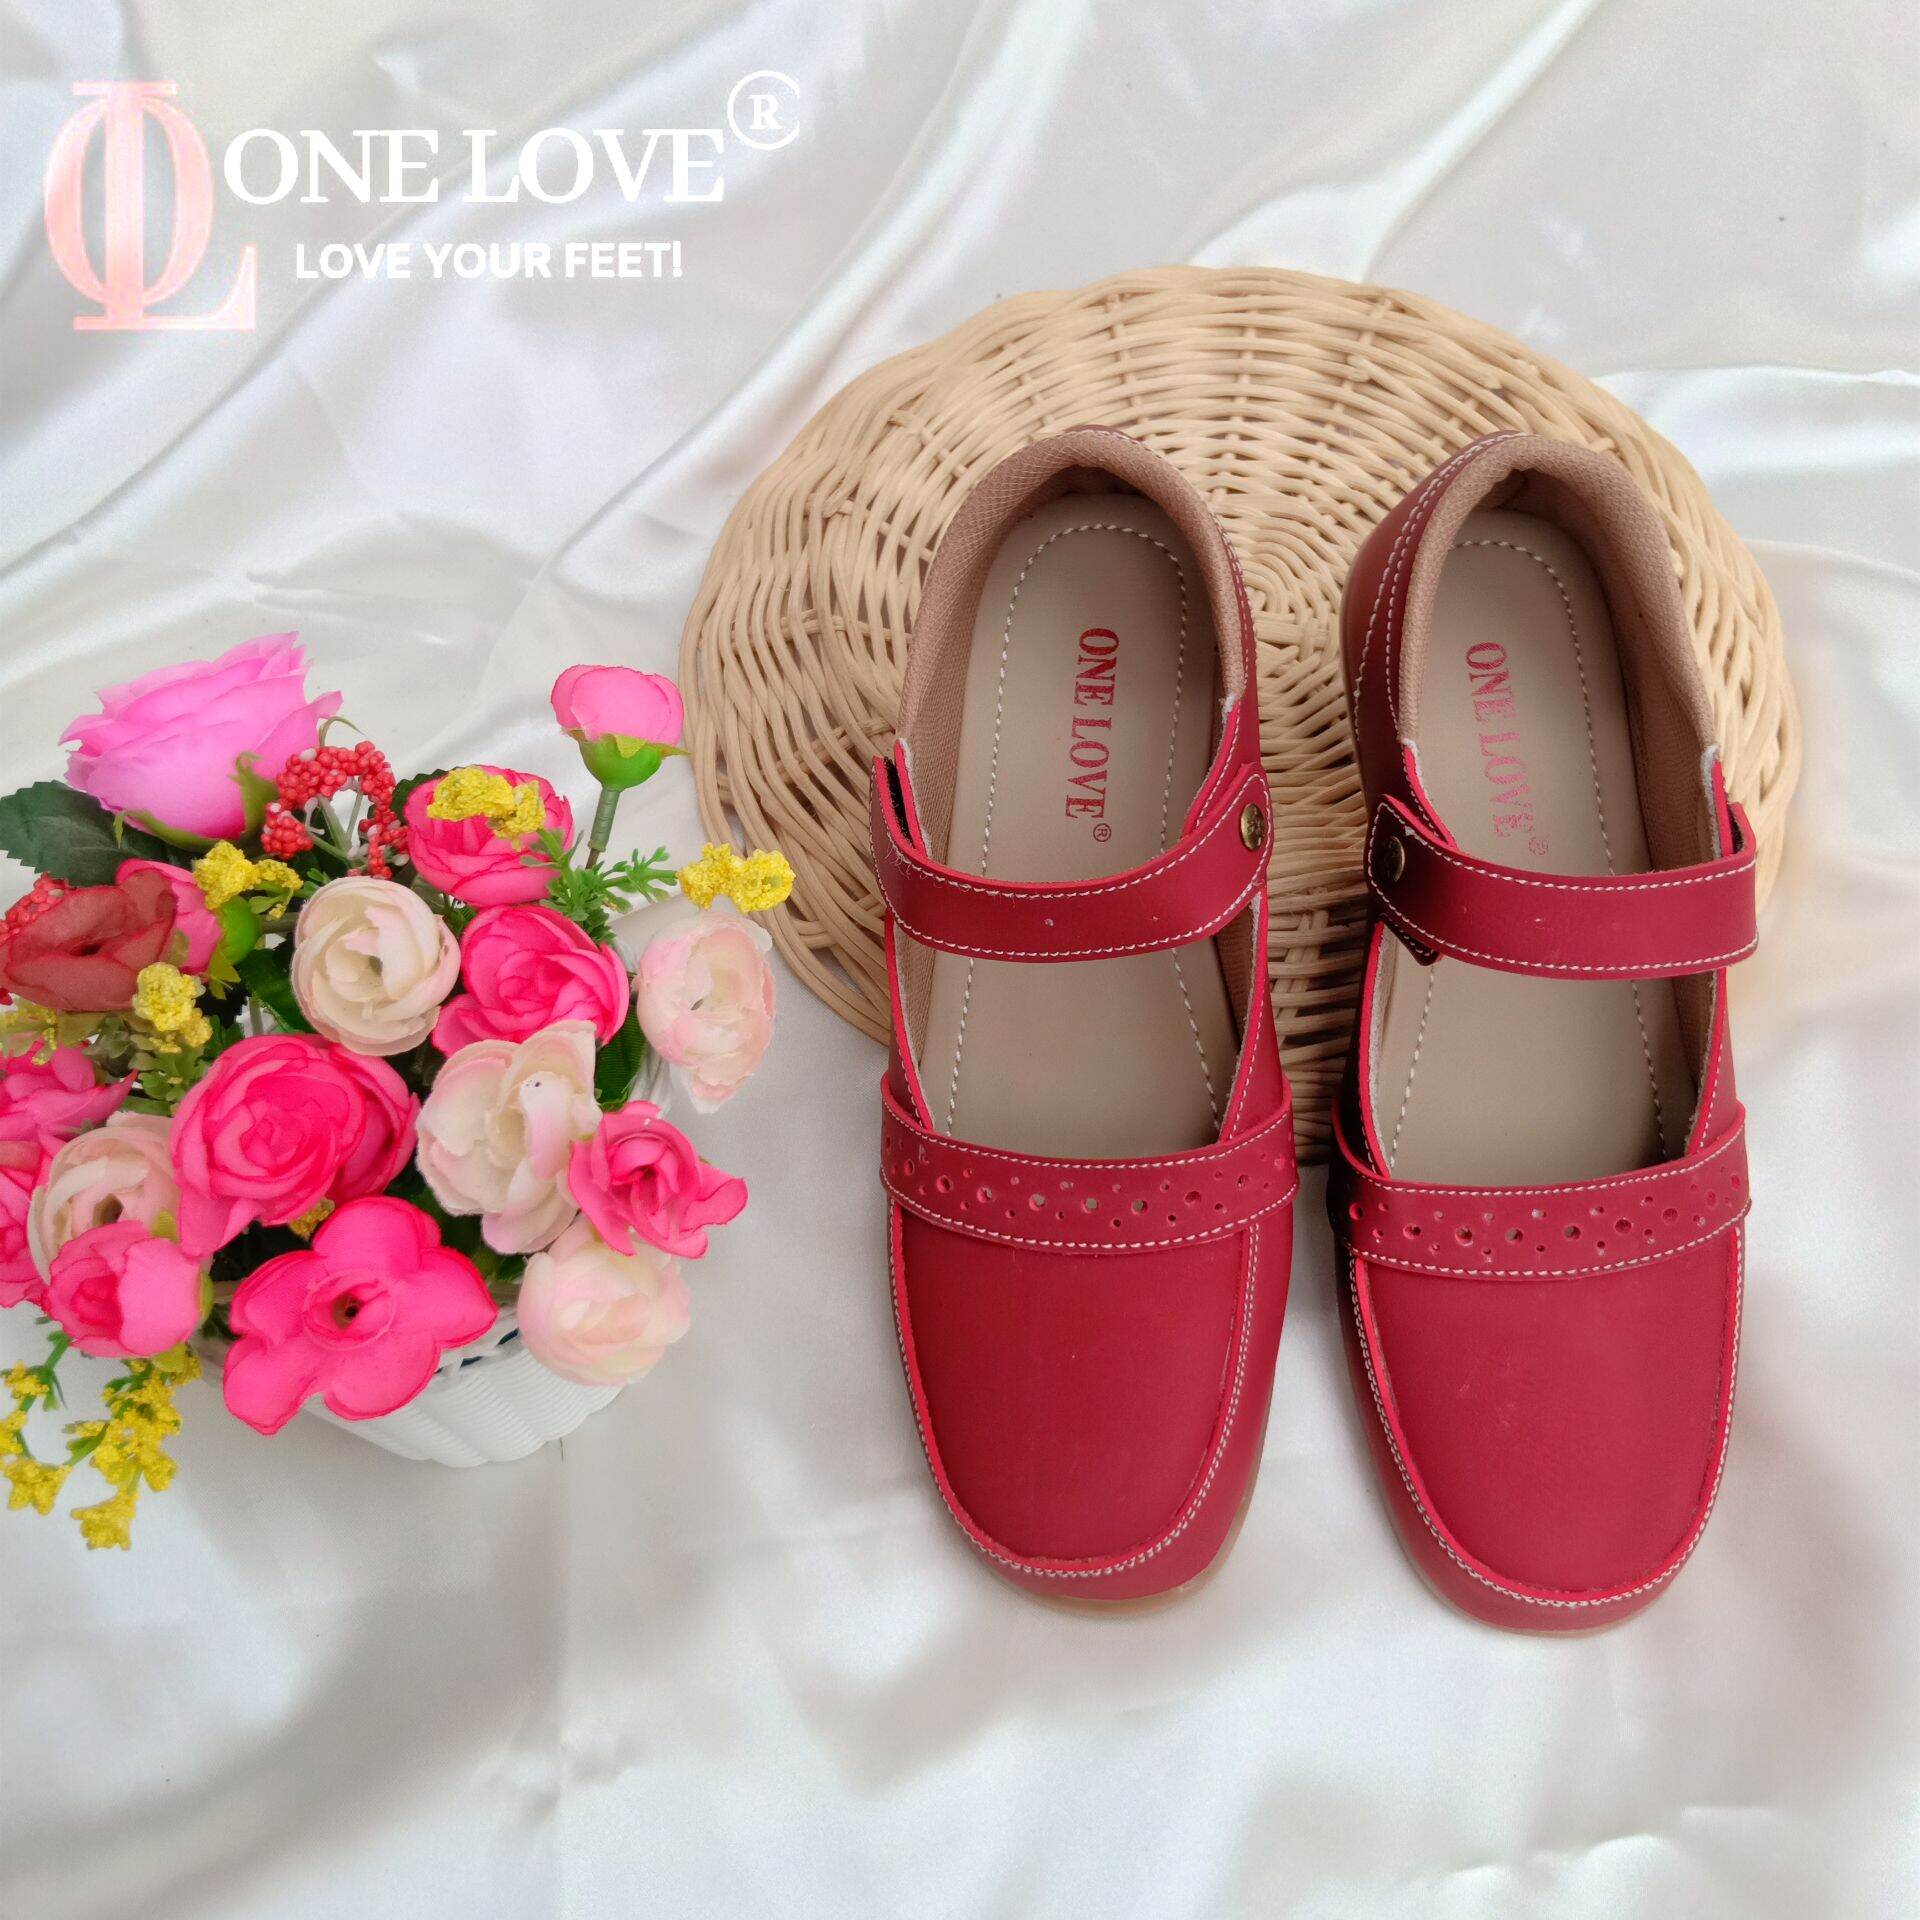 Sepatu Wanita Flat Shoes Casual Asli Original One Love